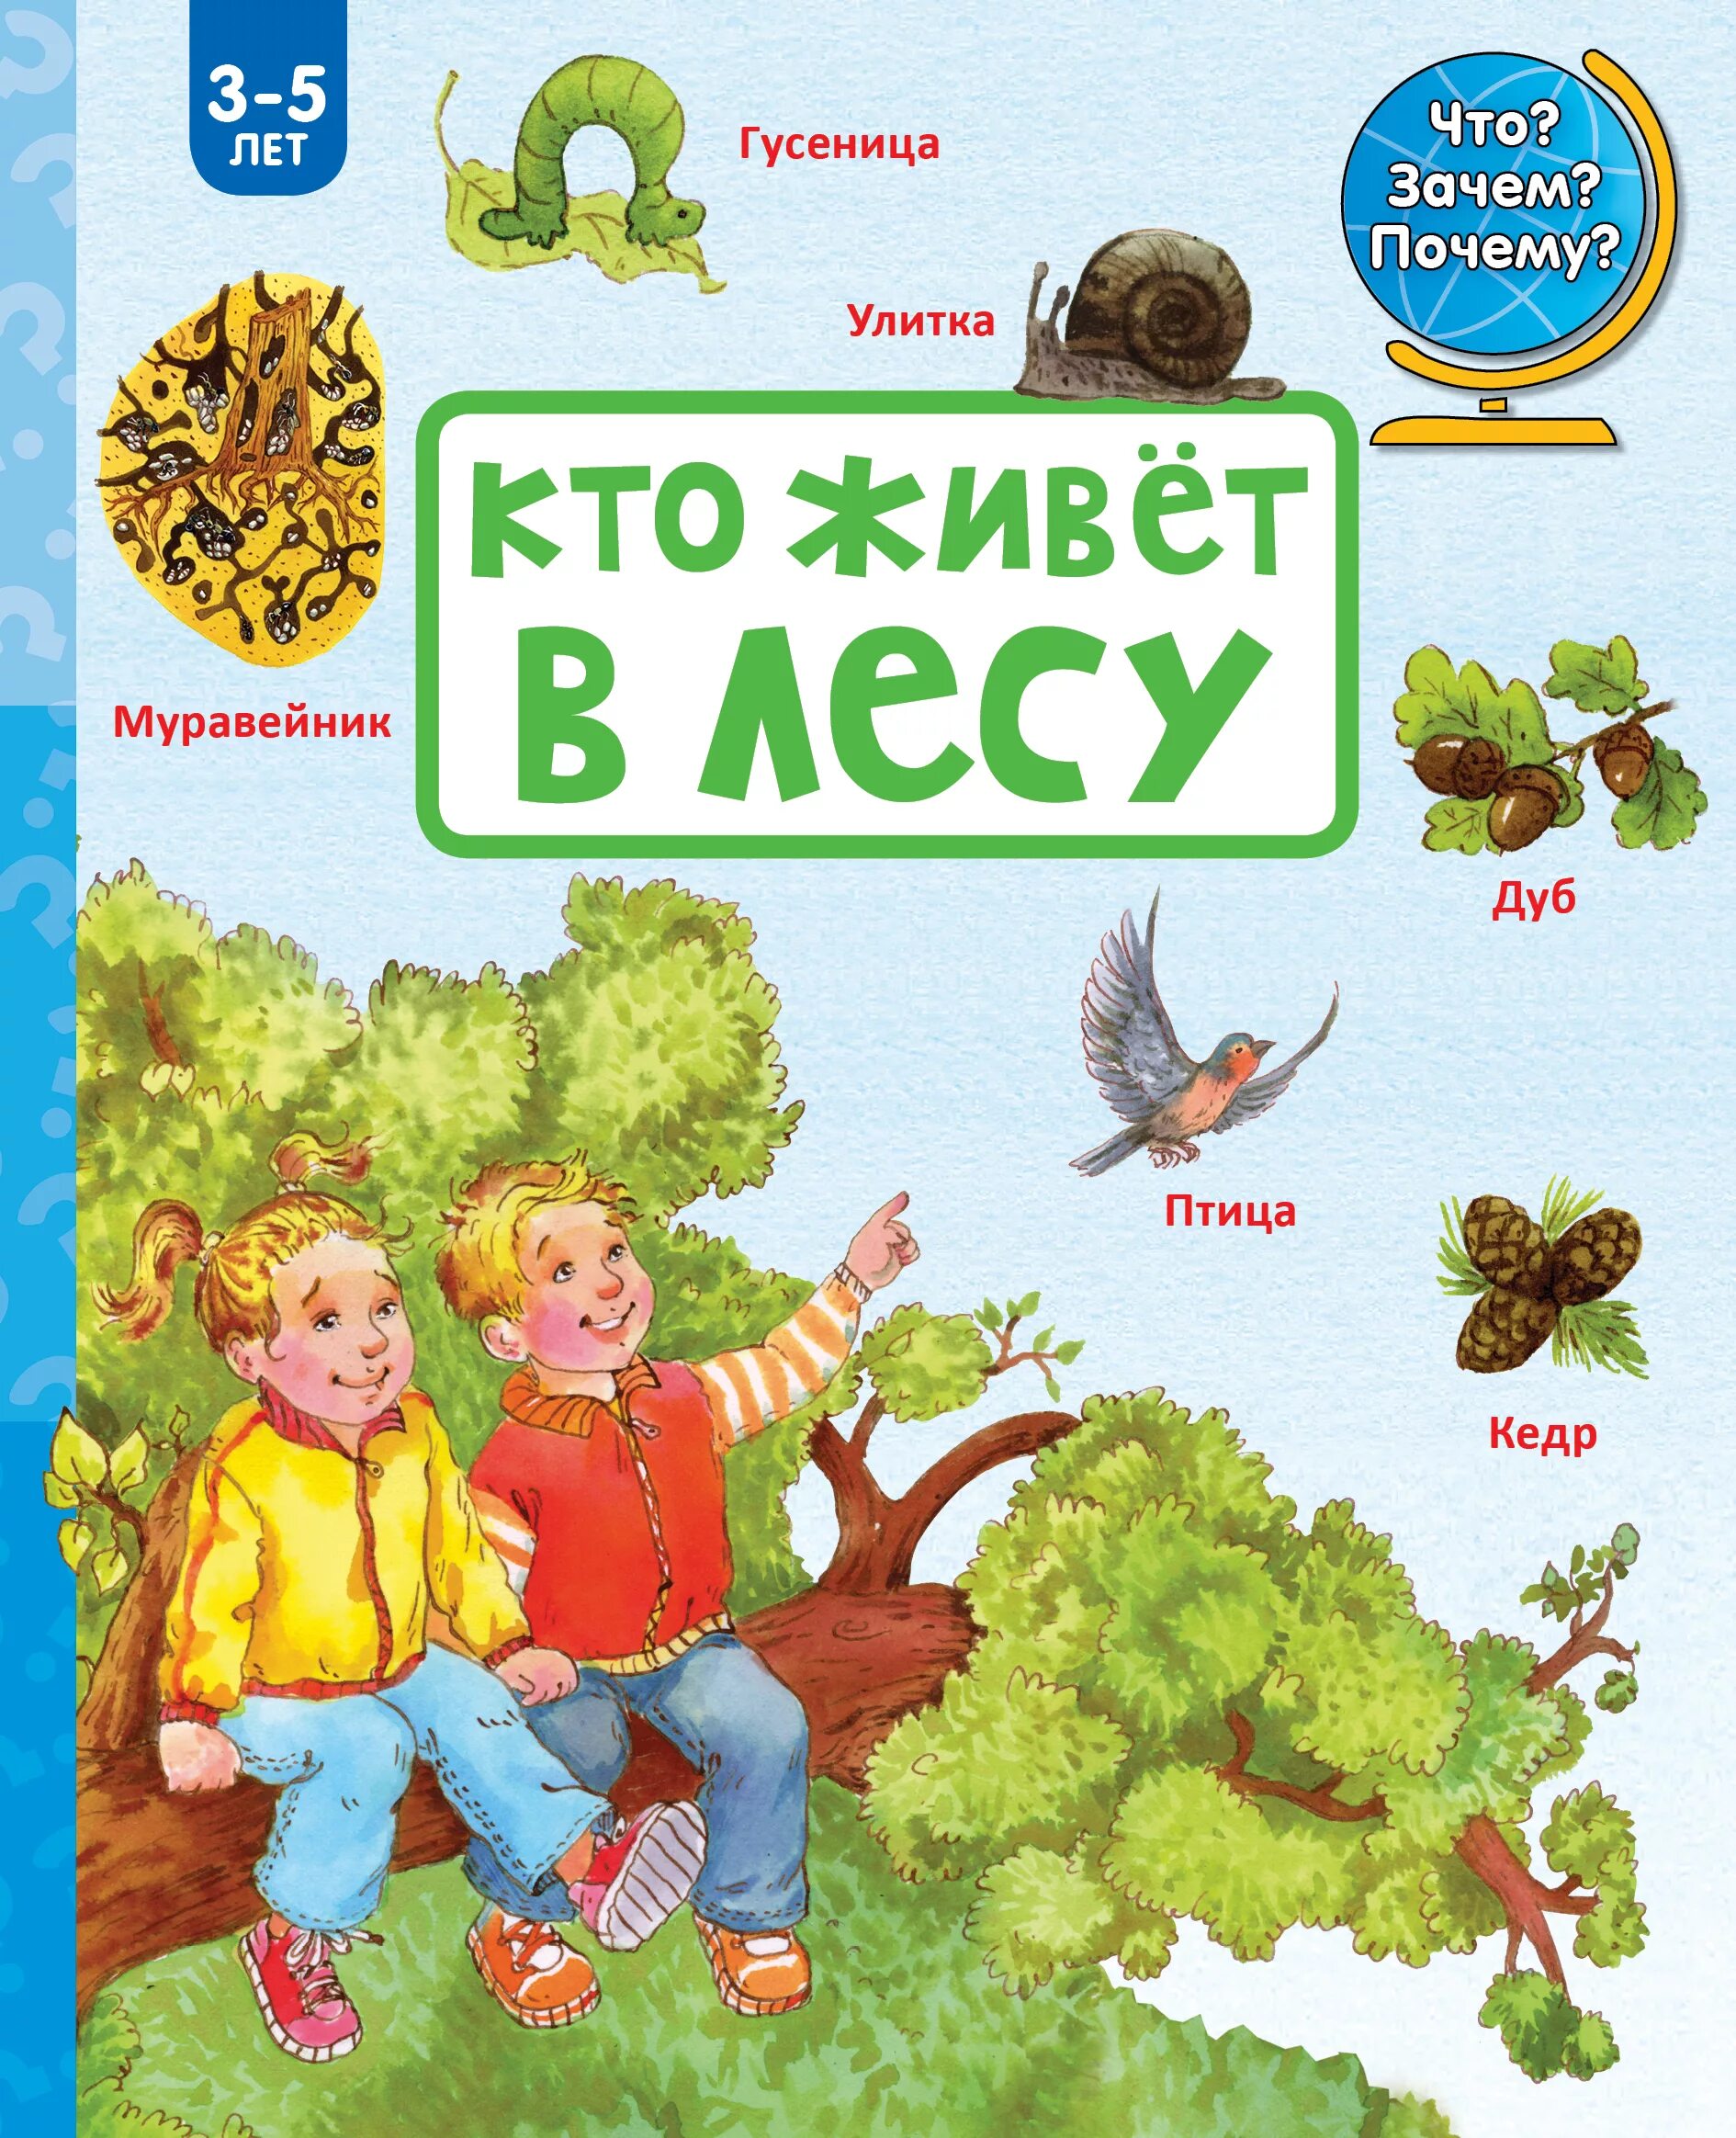 Кто живет 15 лет. Книги для детей. Книги о лесе для детей. Кто живет в лесу. Детская литература про лес.